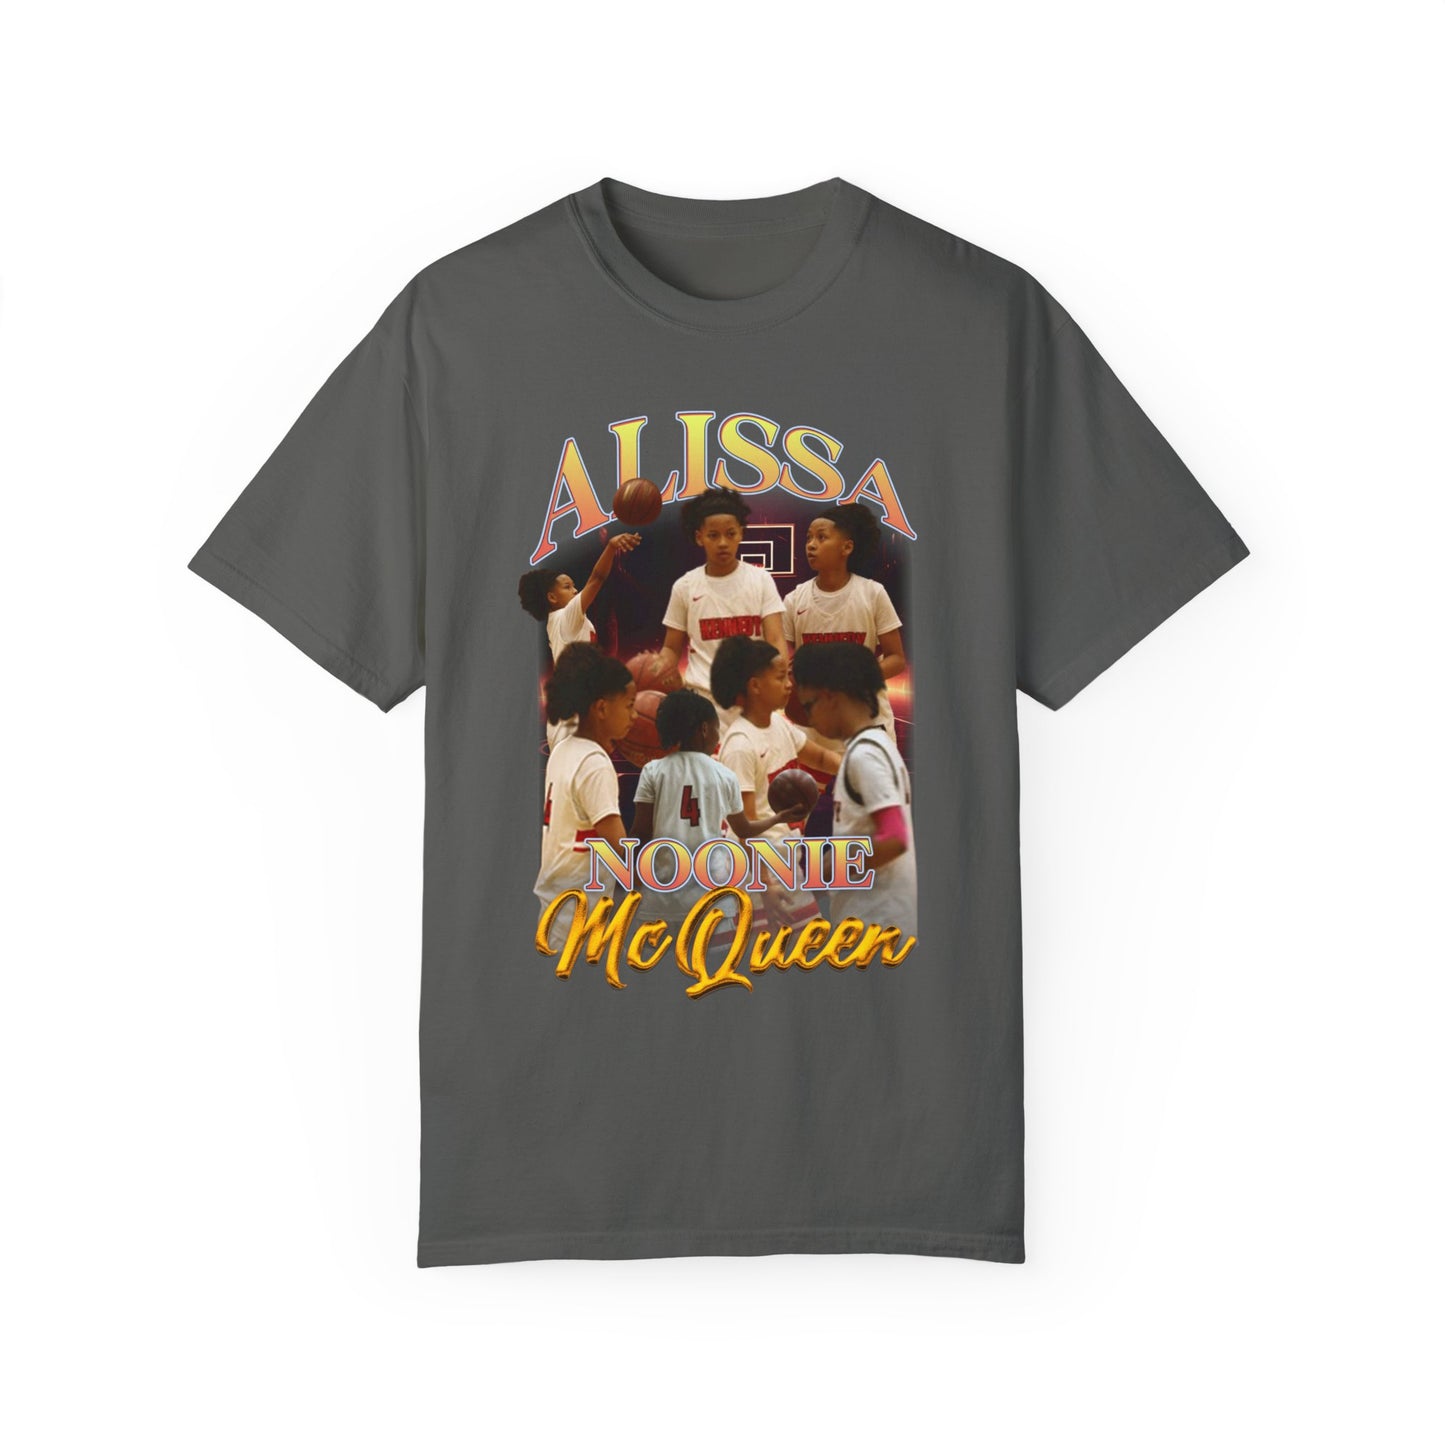 Alissa Noonie McQueen Graphic T-shirt